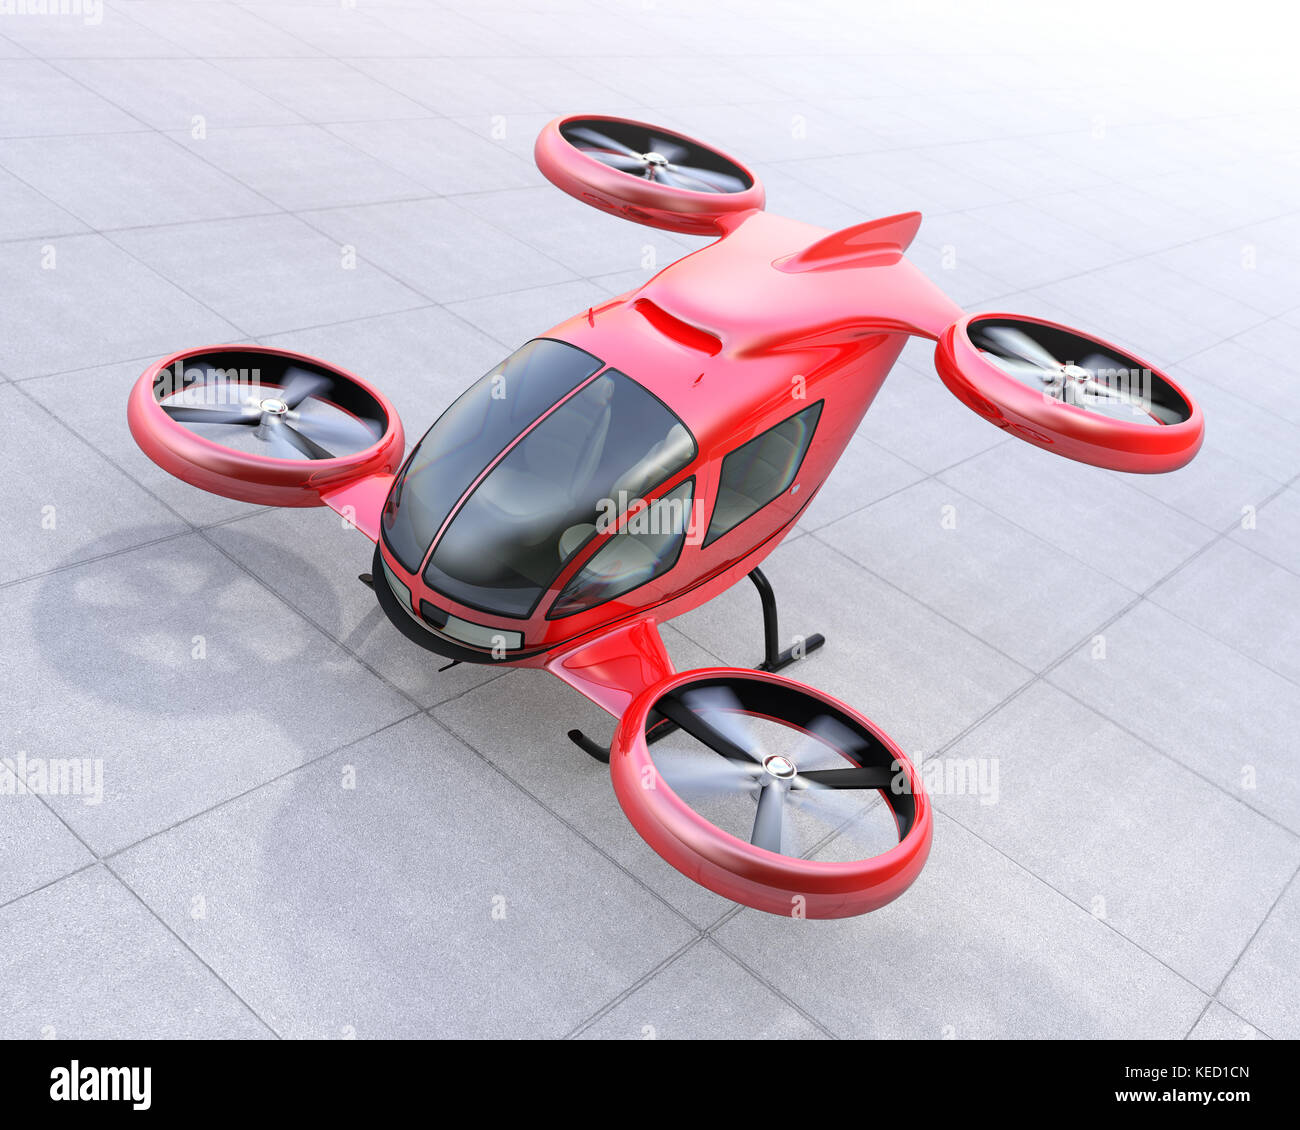 Red Selbstfahrer Pkw drone die Landung auf dem Boden. 3D-Bild. Stockfoto